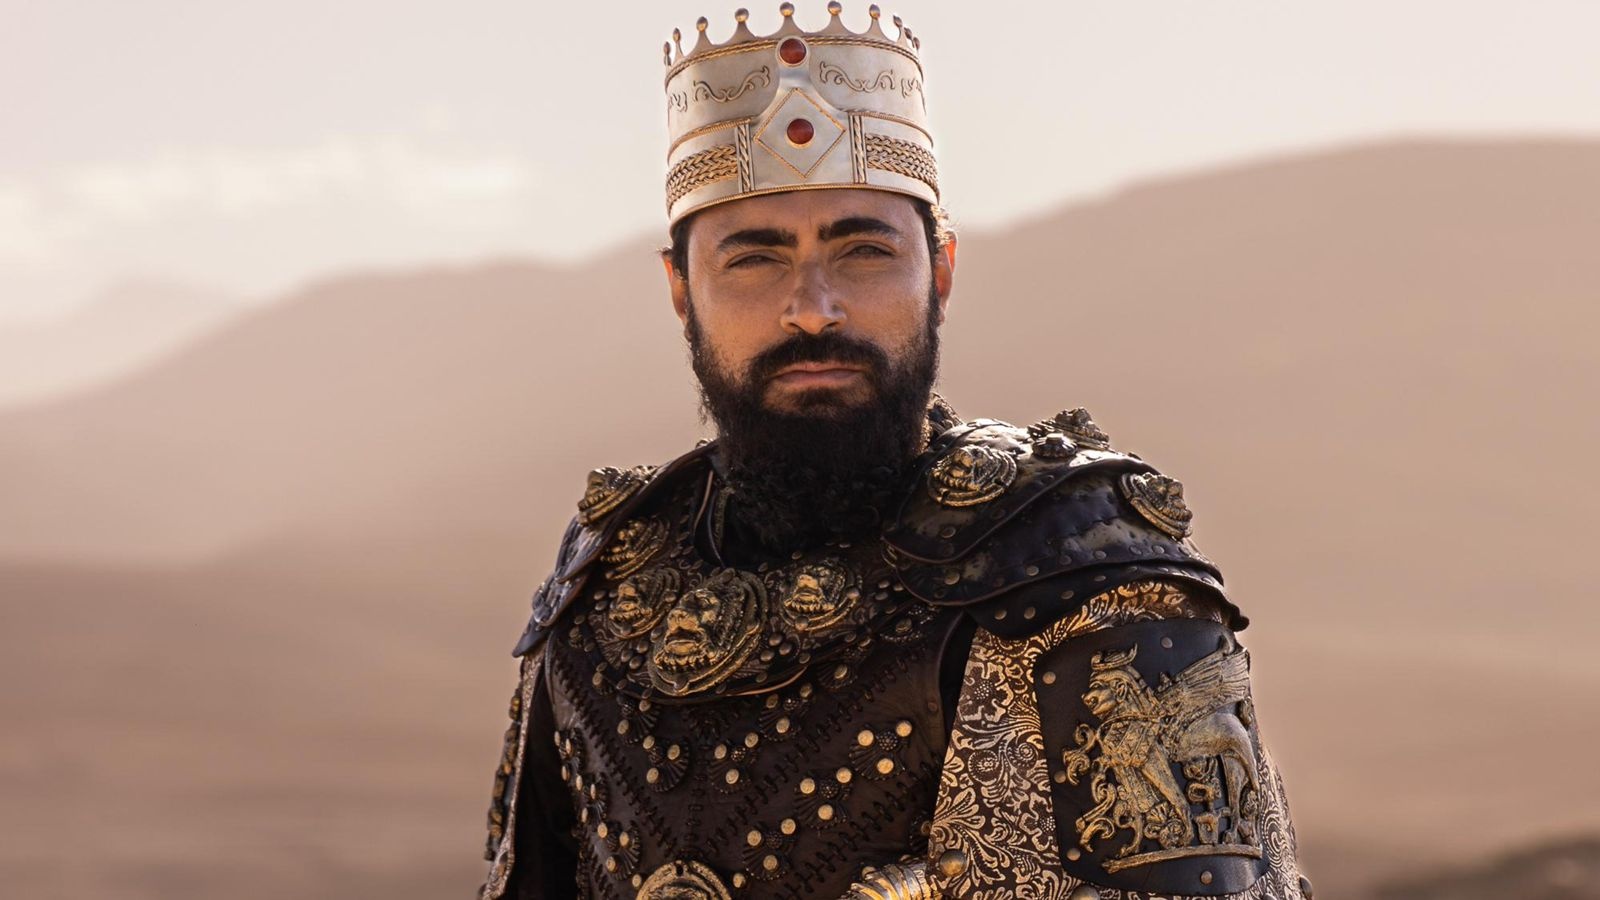 Ator Carlo Porto interpreta o Rei Xerxes na série Rainha da Pérsia